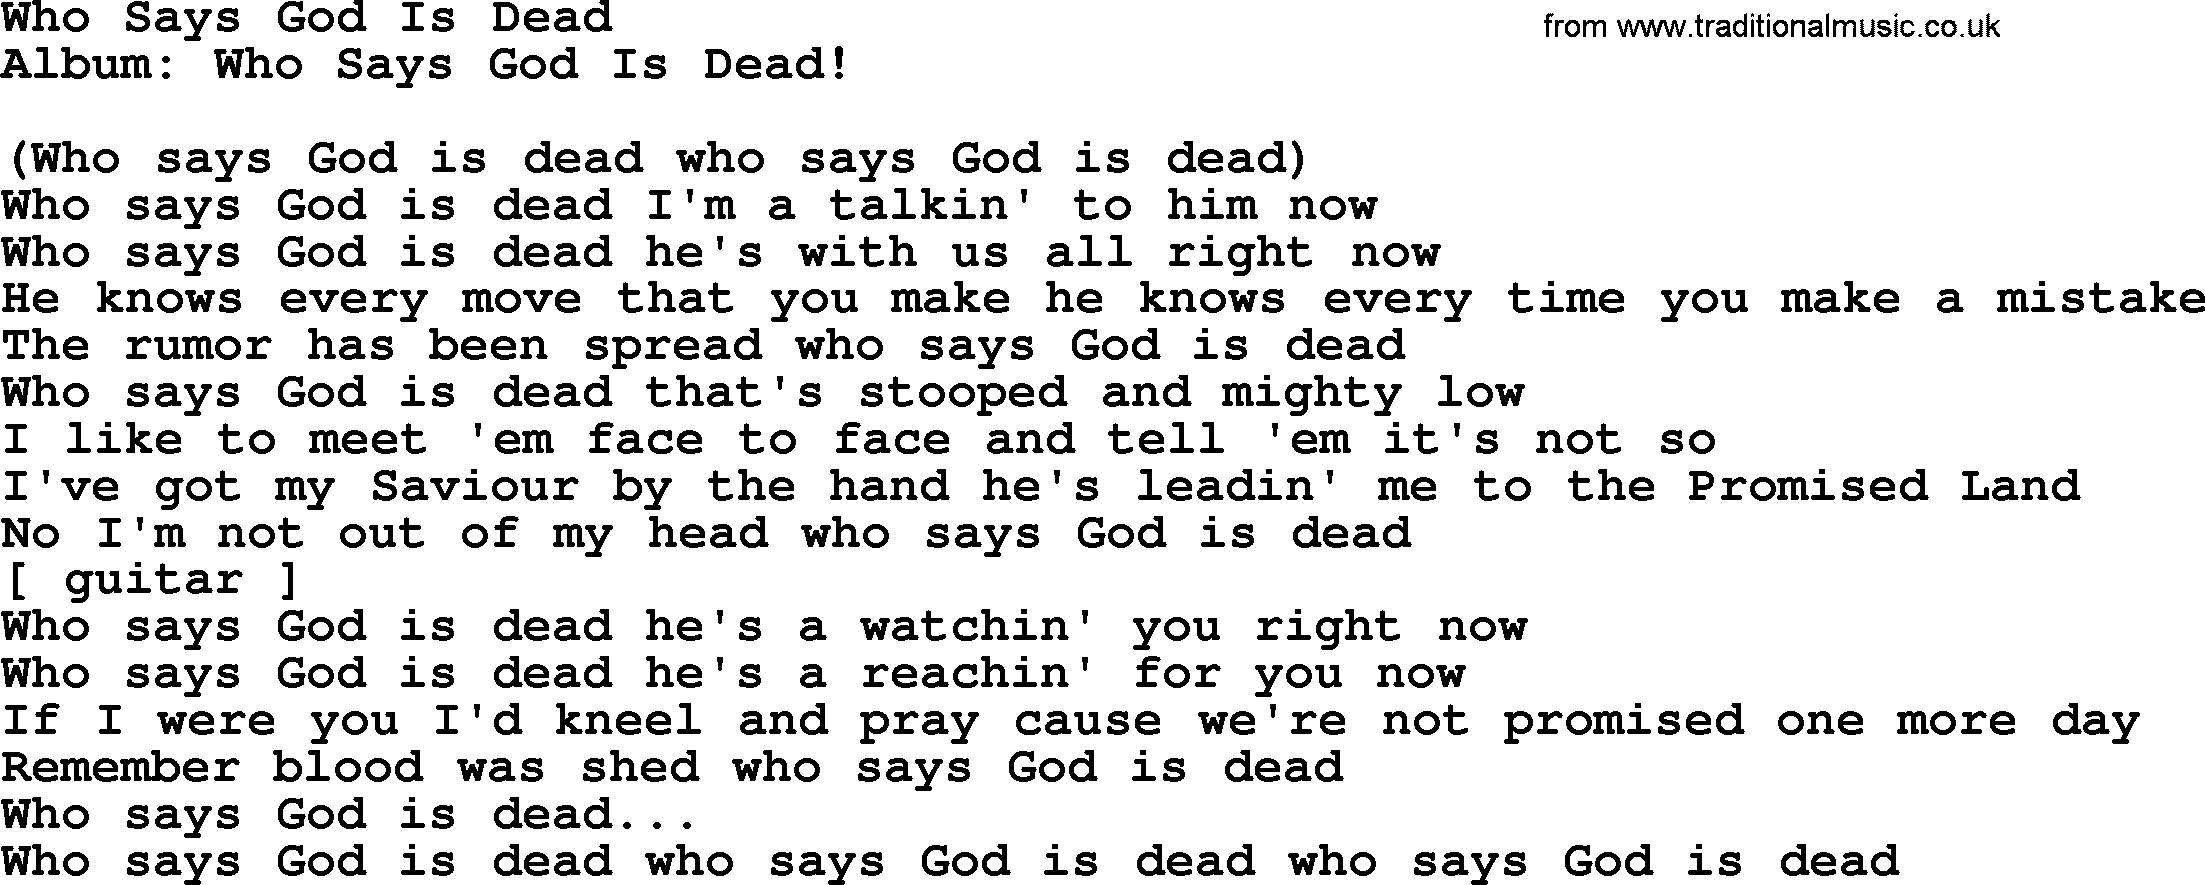 Loretta Lynn song: Who Says God Is Dead lyrics